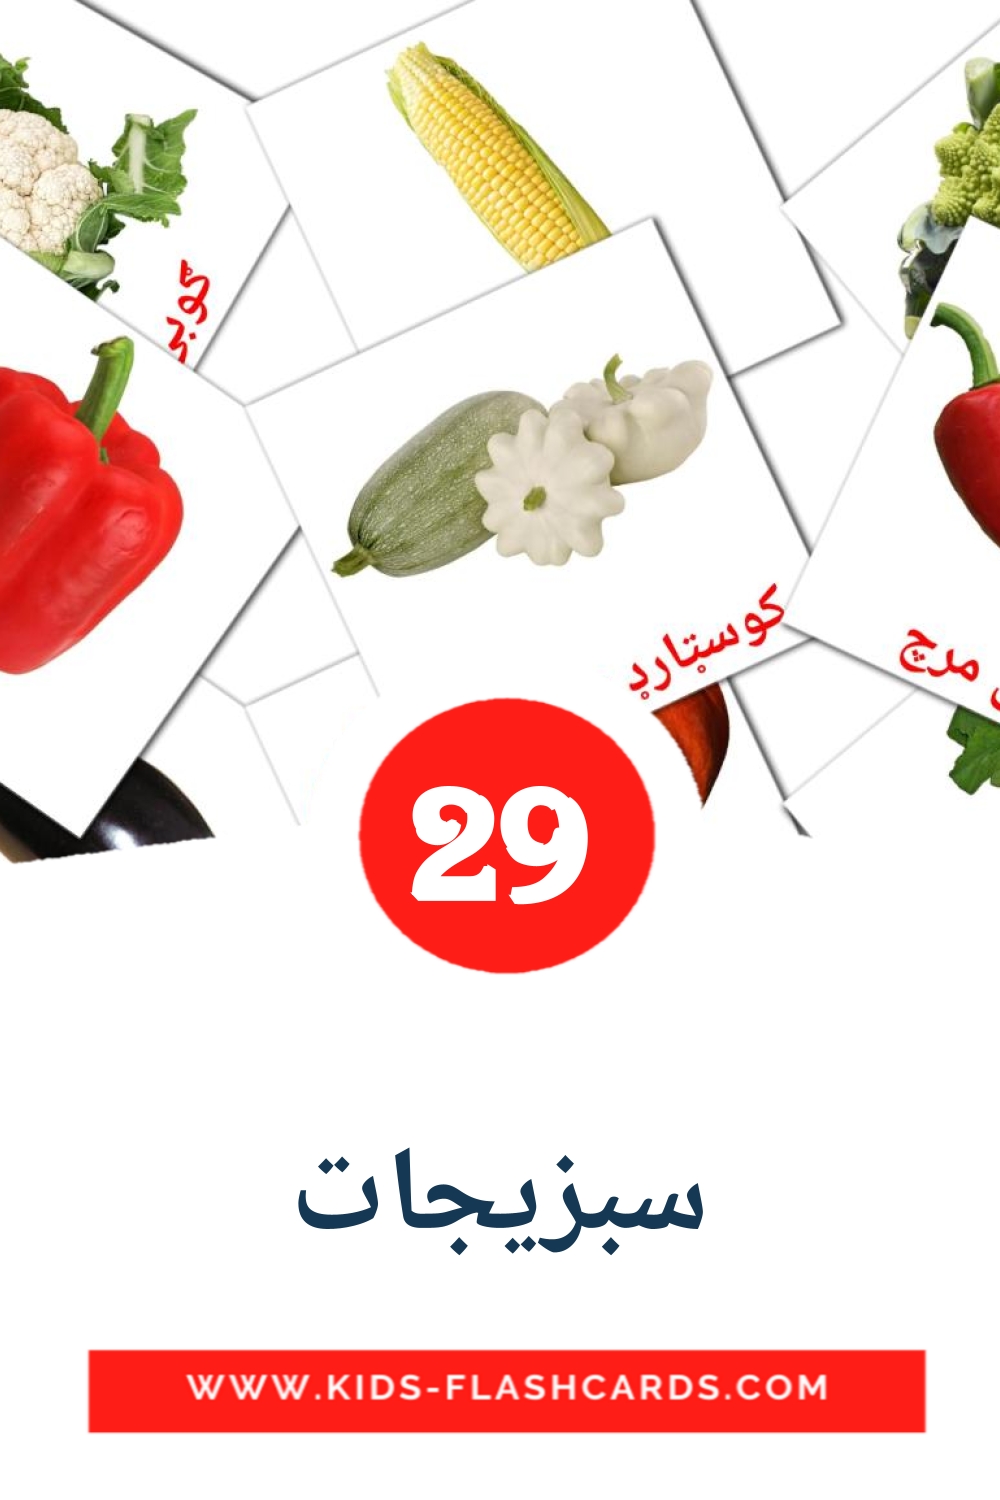 29 Cartões com Imagens de سبزیجات para Jardim de Infância em pashto